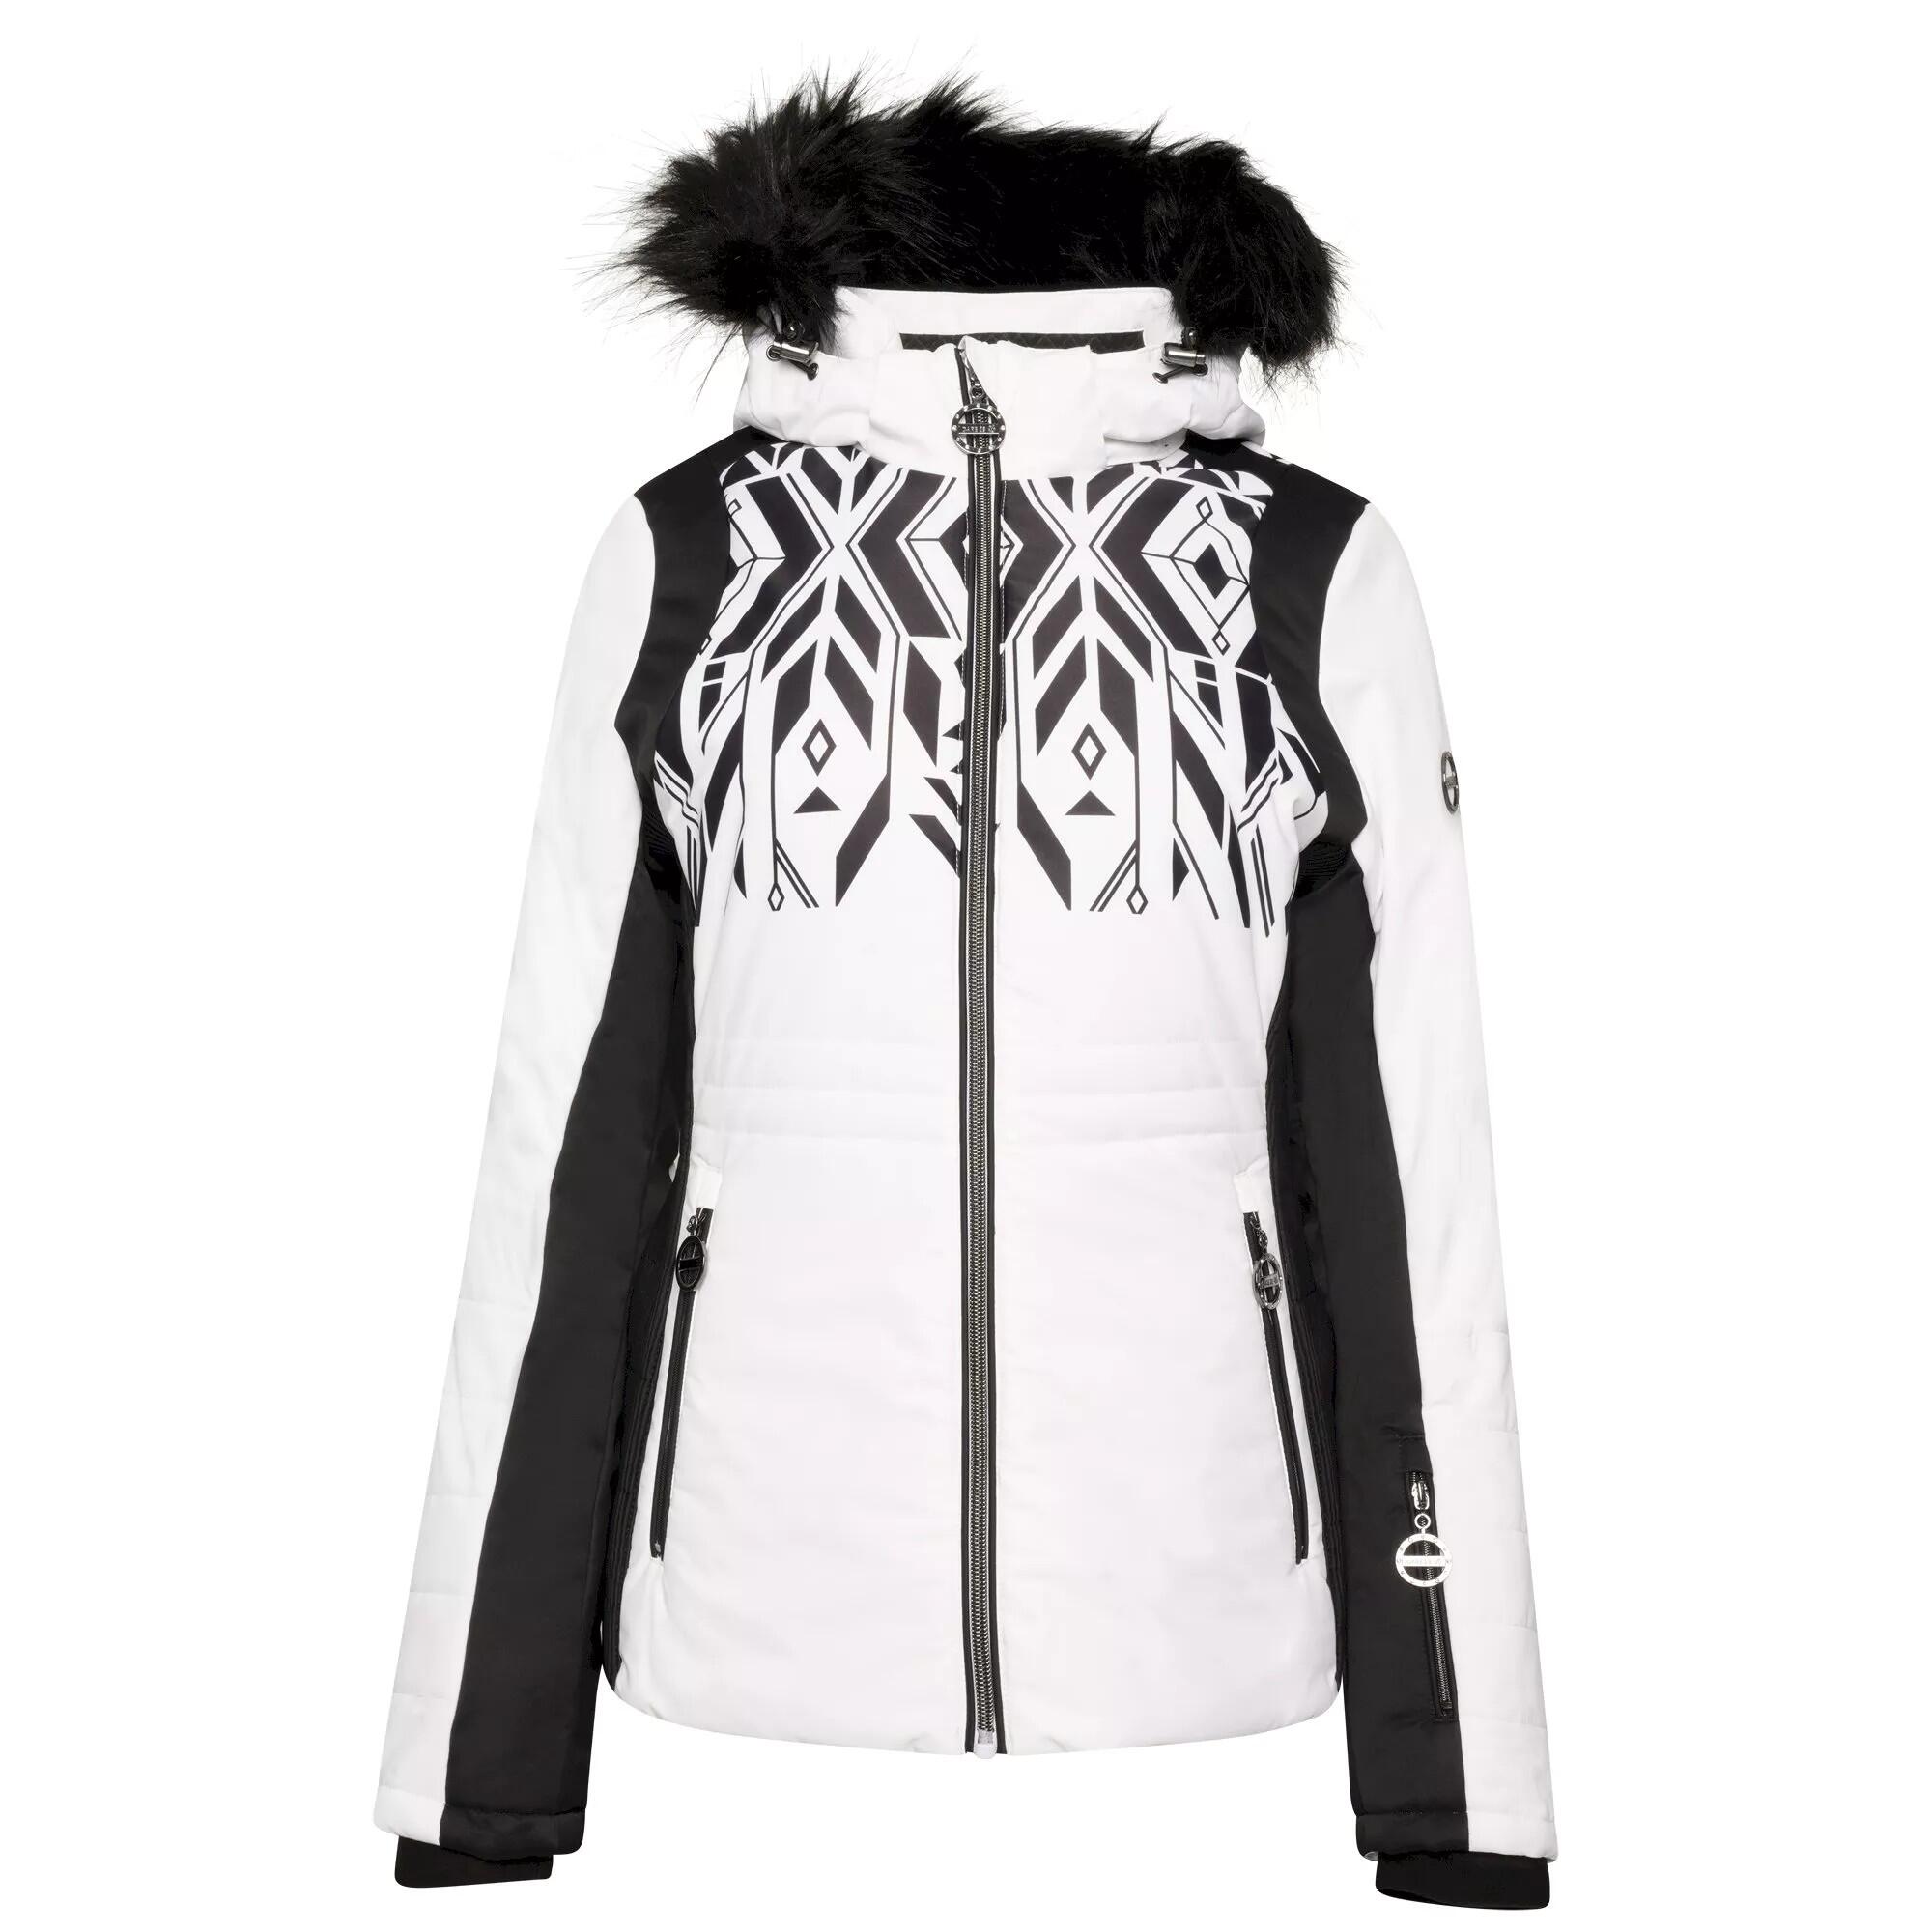 Womens/Ladies Prestige II Luxe Printed Ski Jacket (White/Black) 1/4